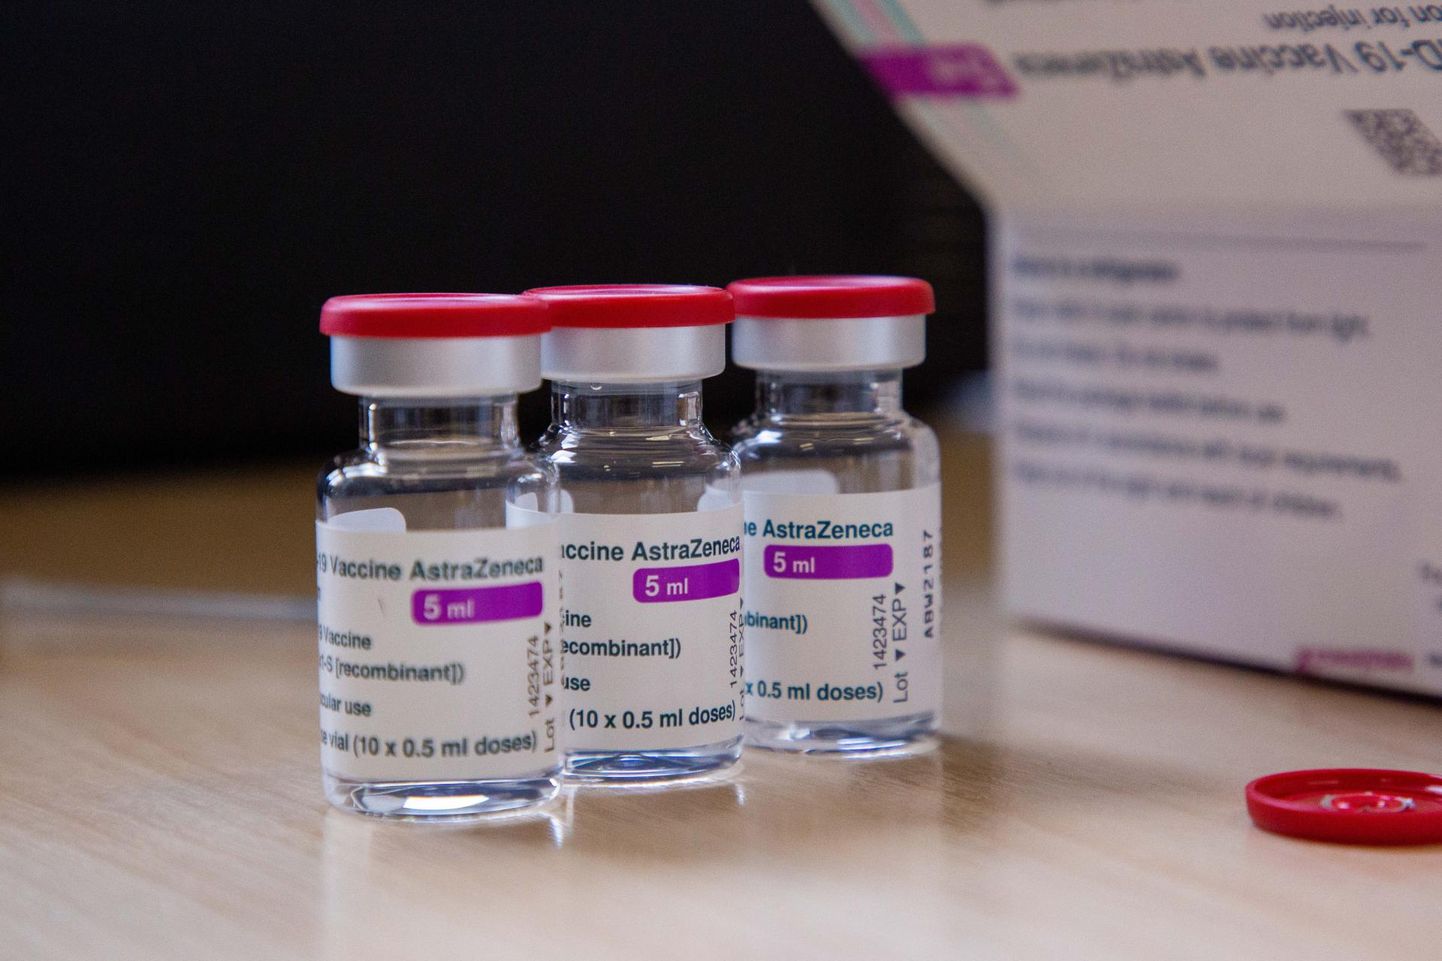 Tuleval nädalal saabub Eestisse 12 000 doosi AstraZeneca vaktsiini.